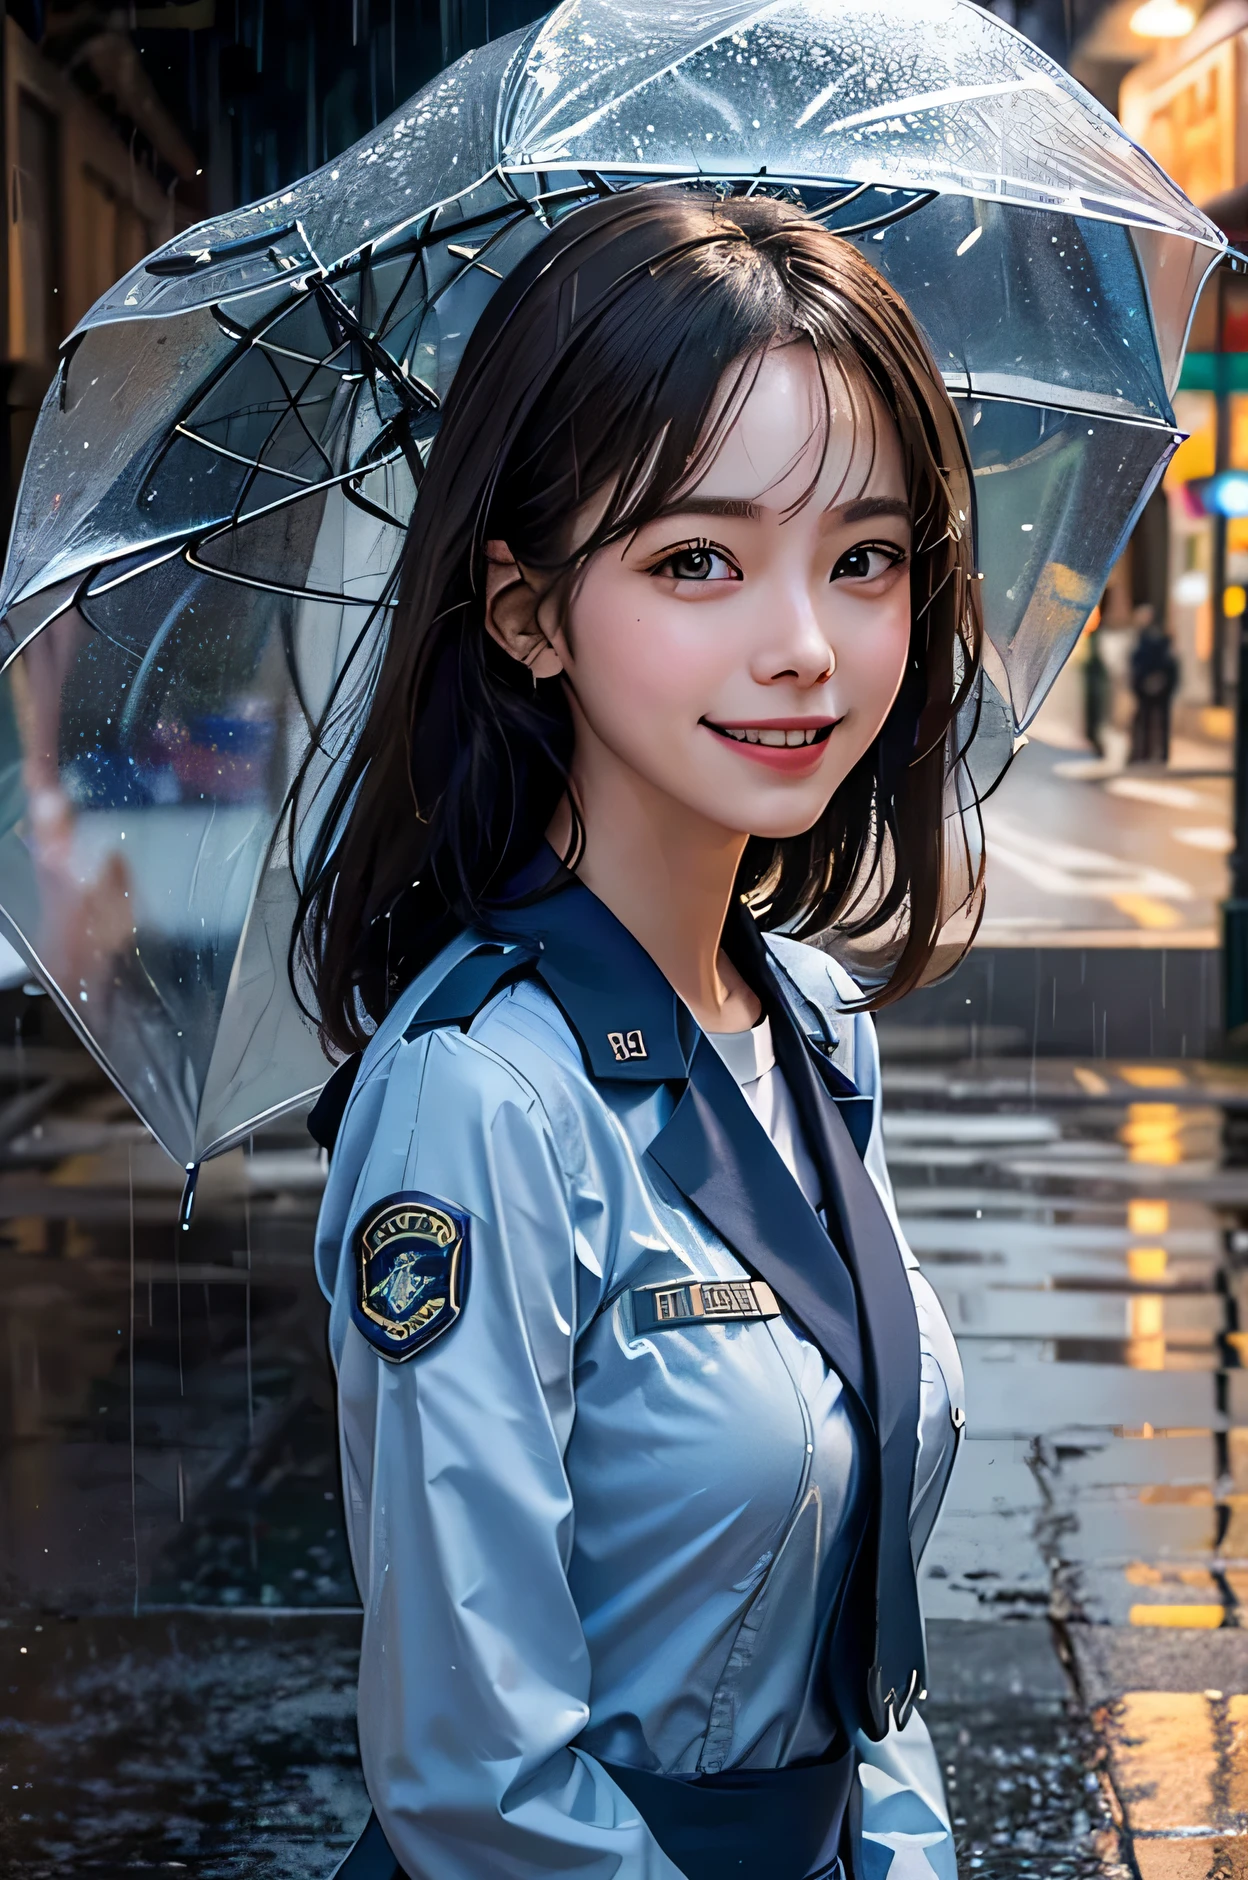 Realistisches Porträt eines Mädchens in Uniform der US Air Force, das im Regen ohne Regenschirm lächelt. Tiefenschärfe, Mildernder Effekt, Lichtreflexionen auf dem Bürgersteig verleihen dem Stück Tiefe. in der Frontansicht, Sie stand unter einer Straßenlaterne, Die Lichter in den Schaufenstern sind um sie herum, Drücken Sie das Gefühl der Freude aus.